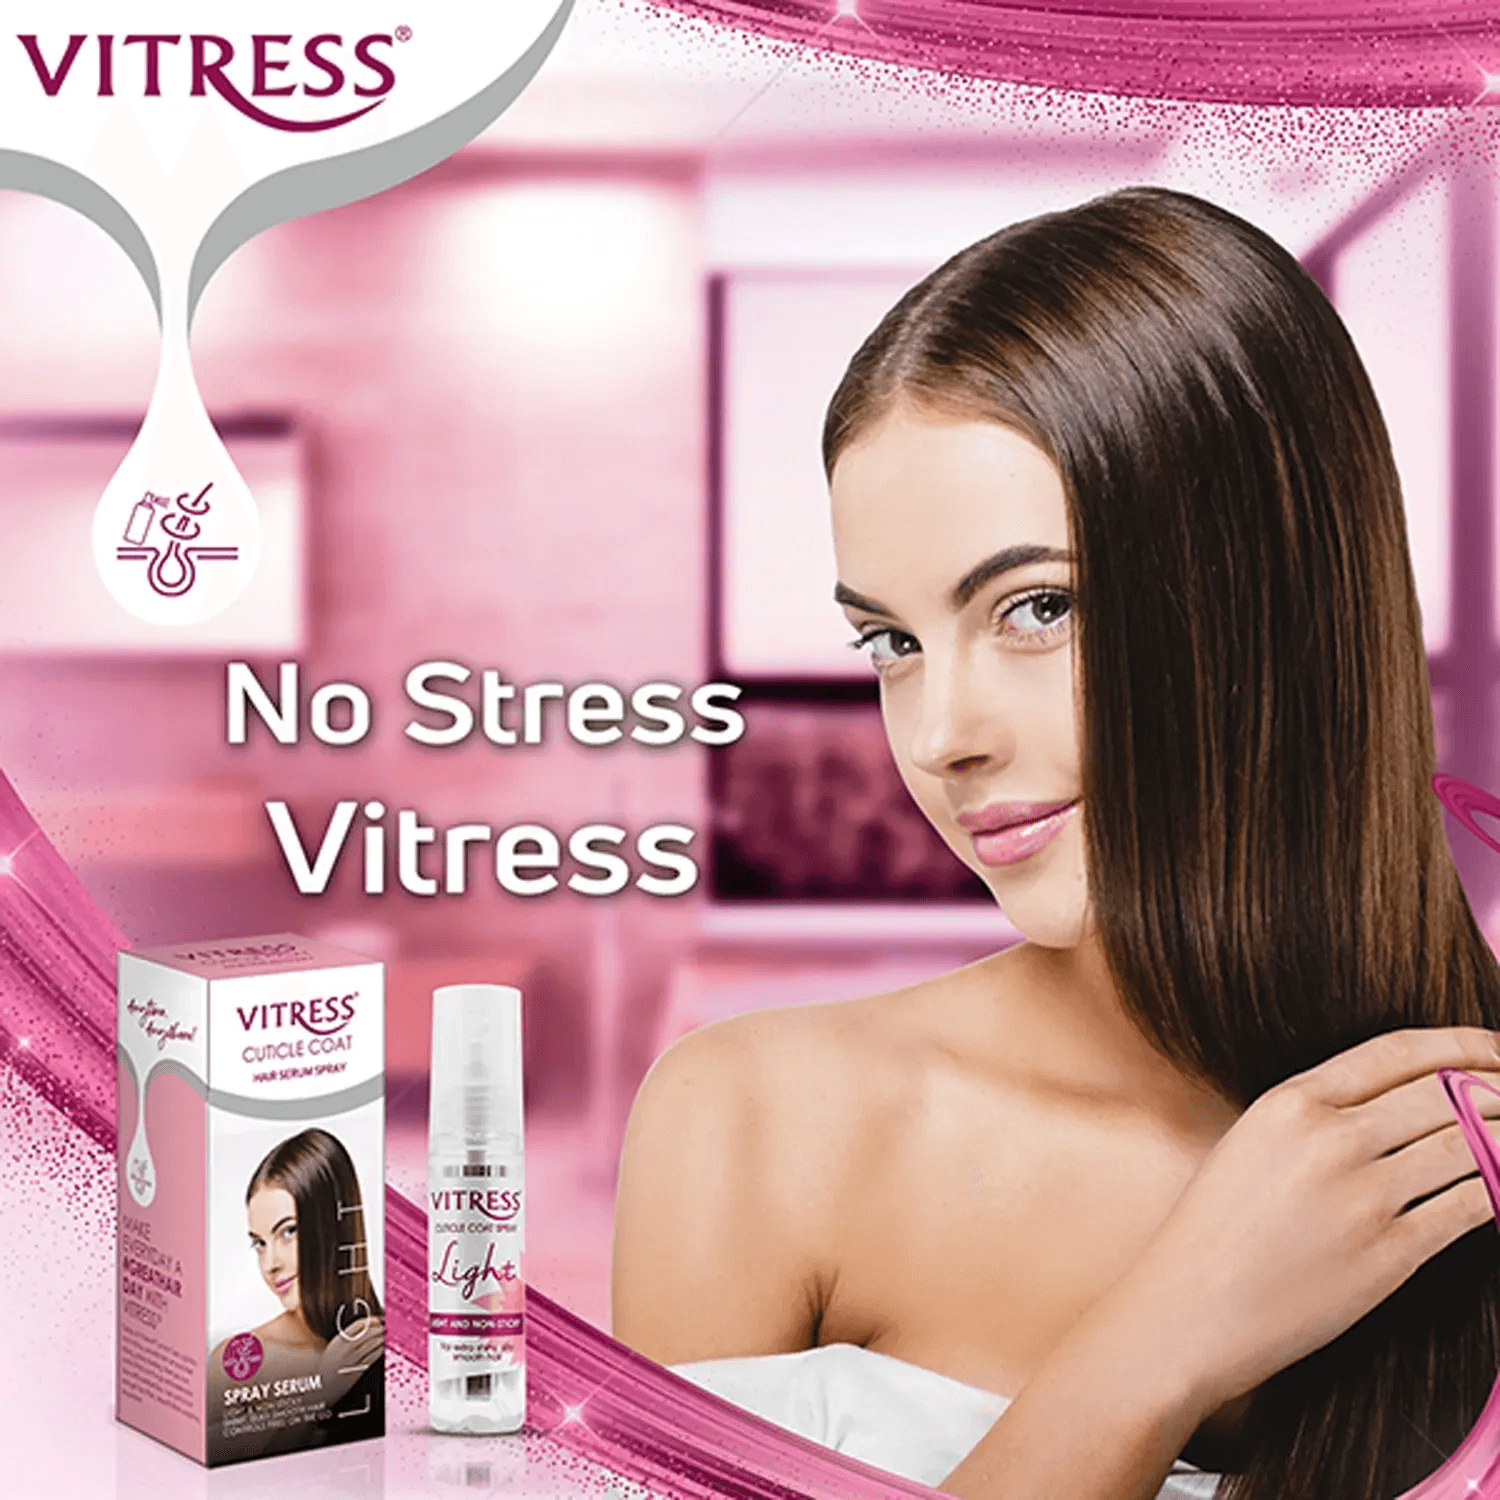 Vitress Cuticle Coat Light Hair Serum Spray (50ml)